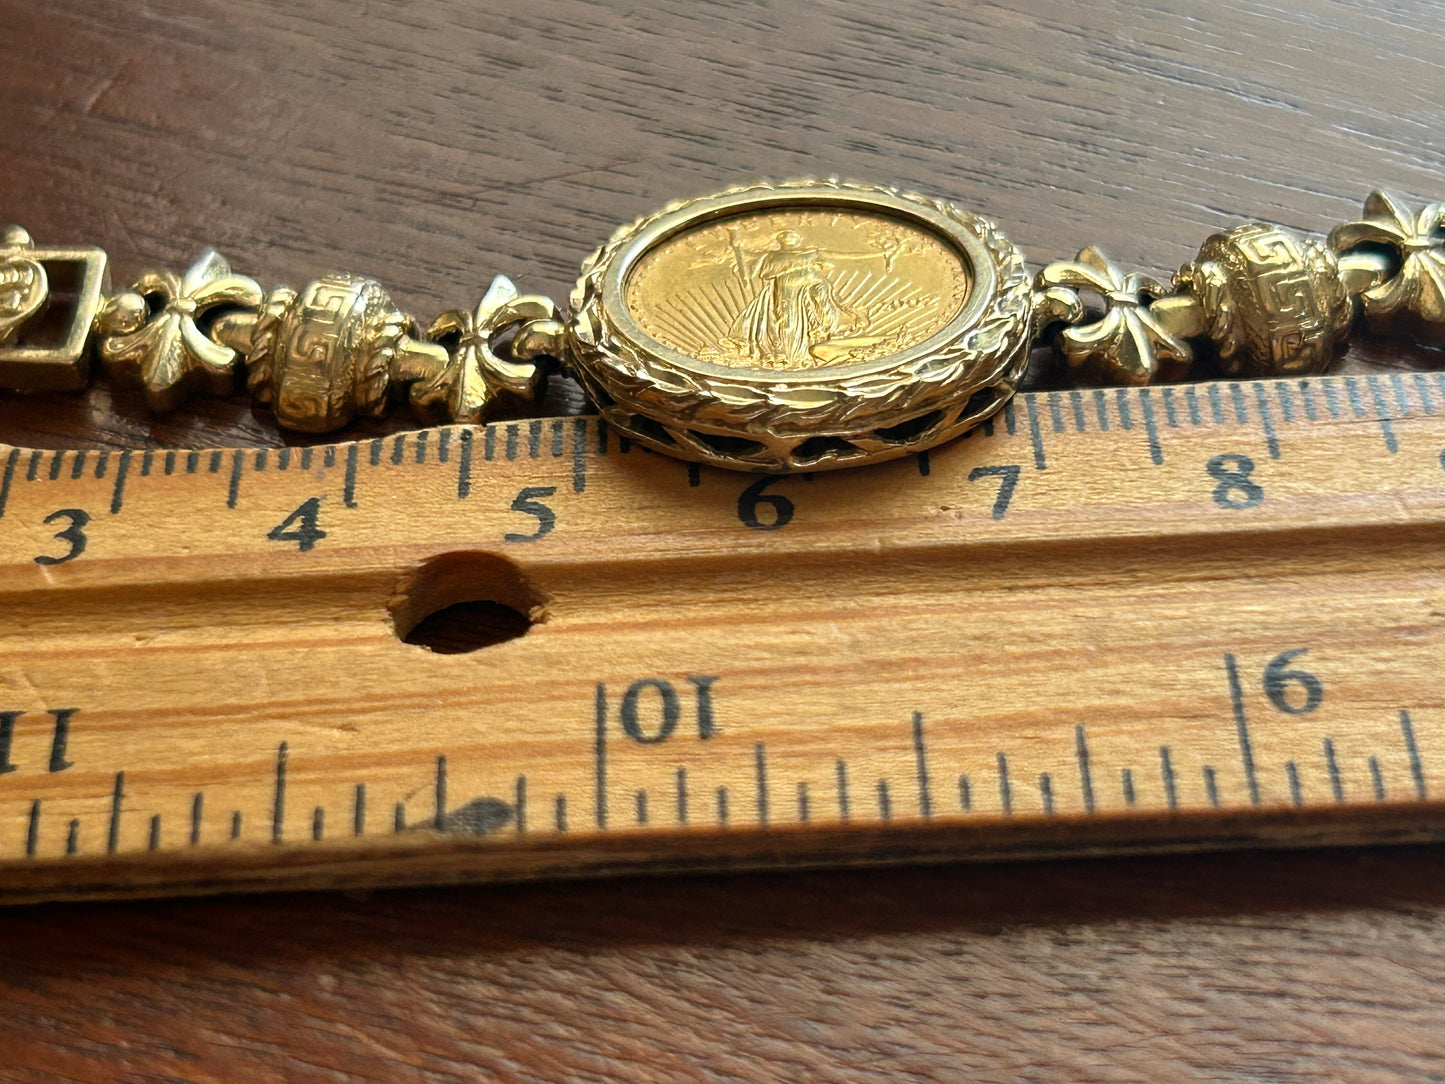 14k Yellow Gold 2002 1/10oz Fine Gold Liberty Coin Bracelet Greek Fleur De Lis